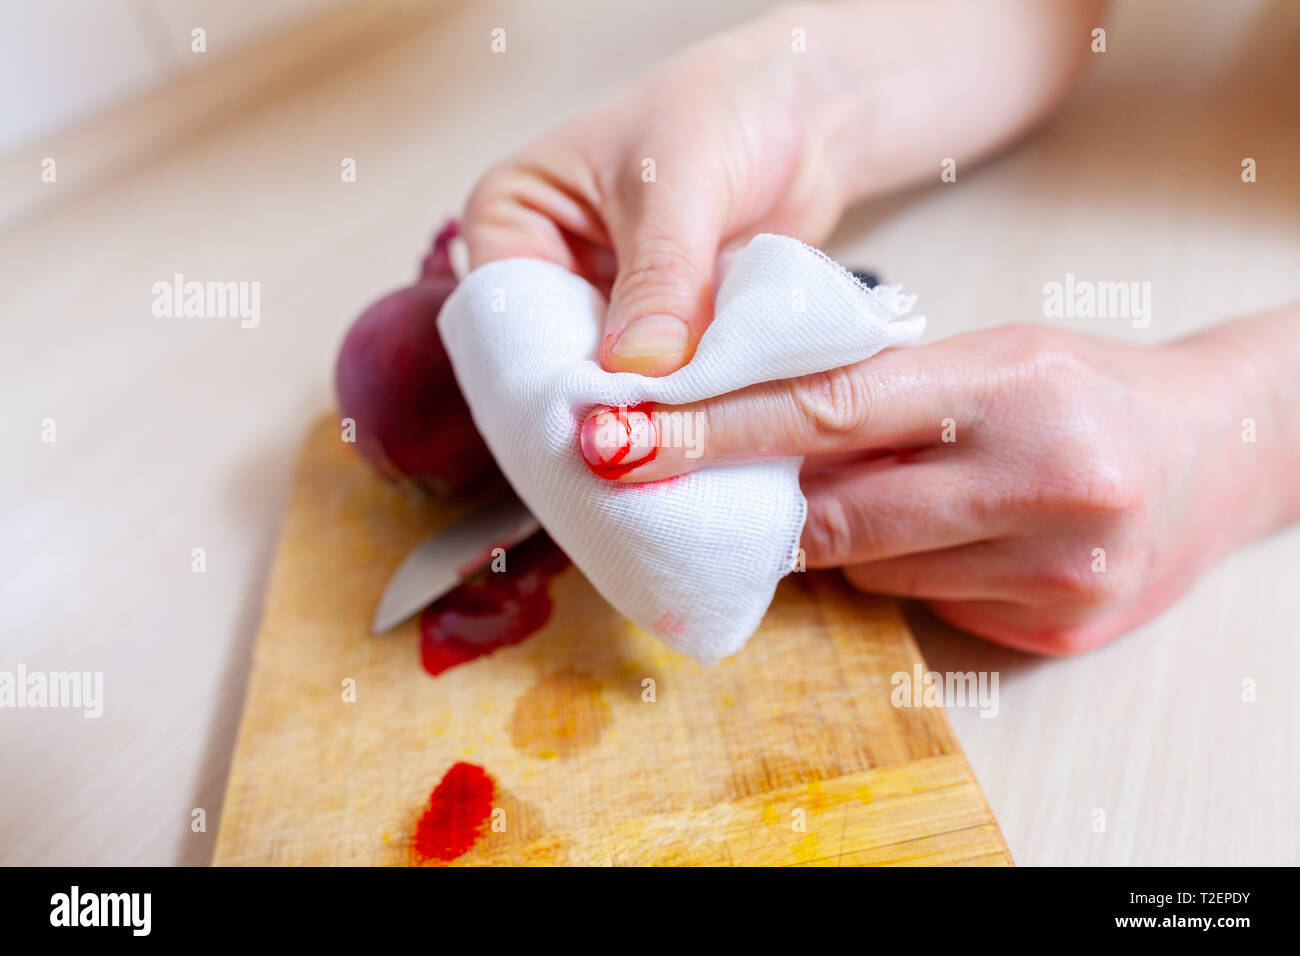 Une femme se coupe avec un couteau dans la cuisine Banque D'Images